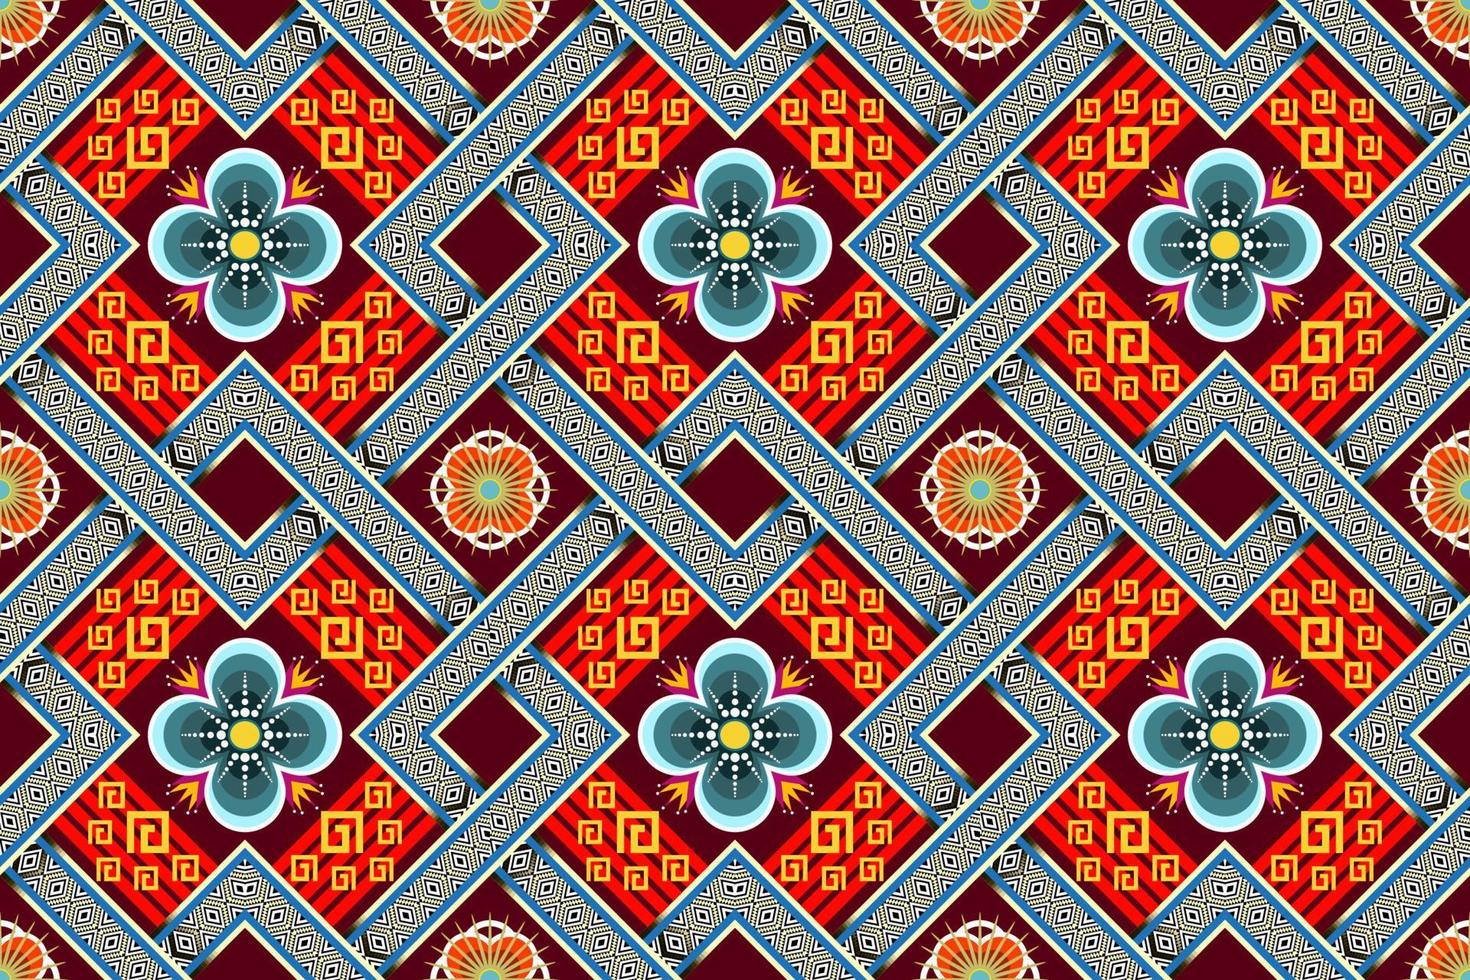 geometriskt etniskt orientaliskt ikatmönster traditionell design för bakgrund, matta, tapeter, kläder, omslag, batik, tyg, vektorillustration.broderistil, sömlöst mönster vektor